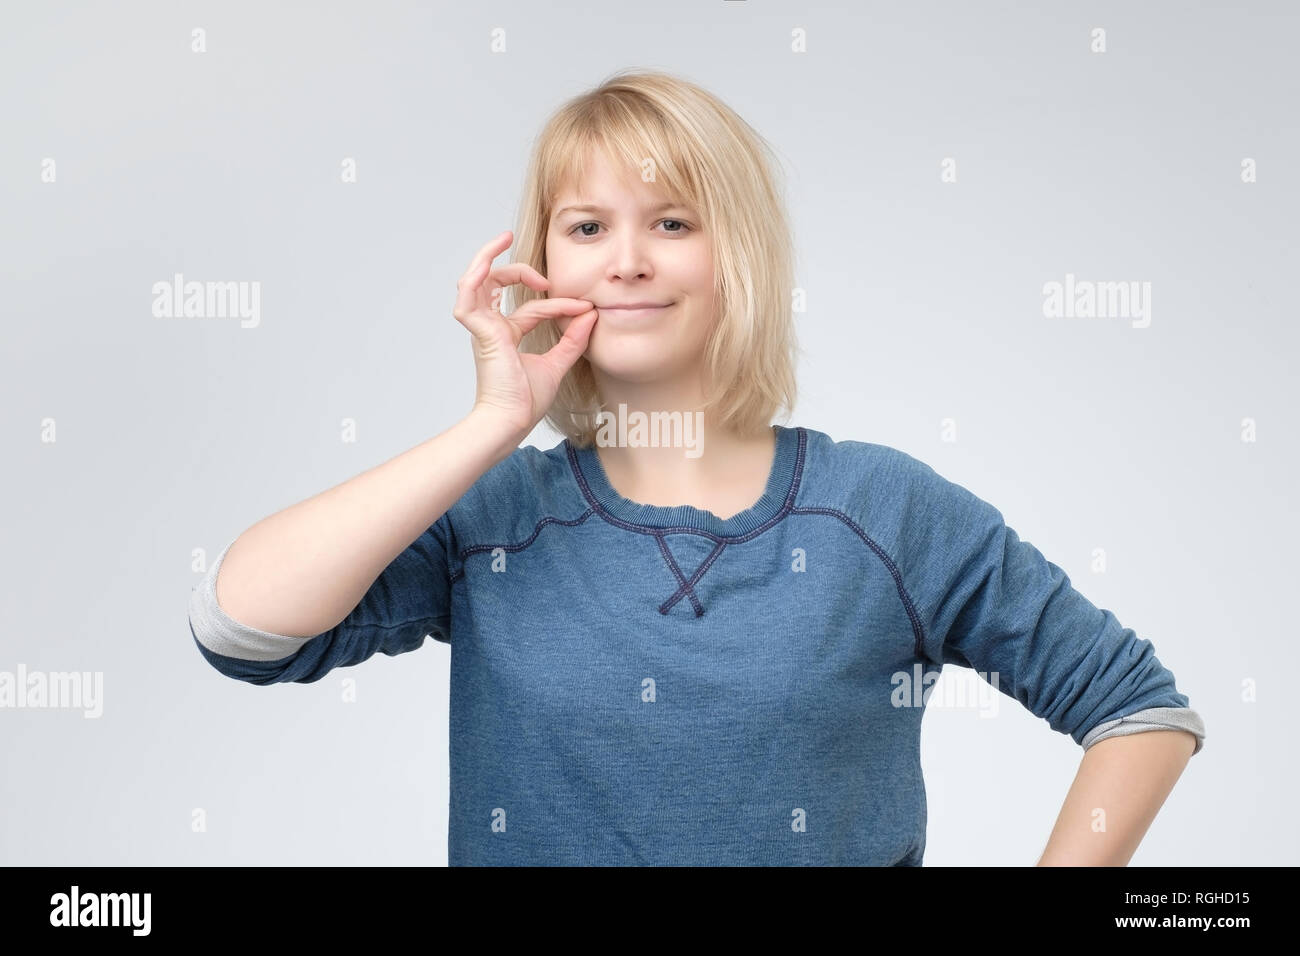 Keep a secret, woman zipping her mouth shut. Stock Photo